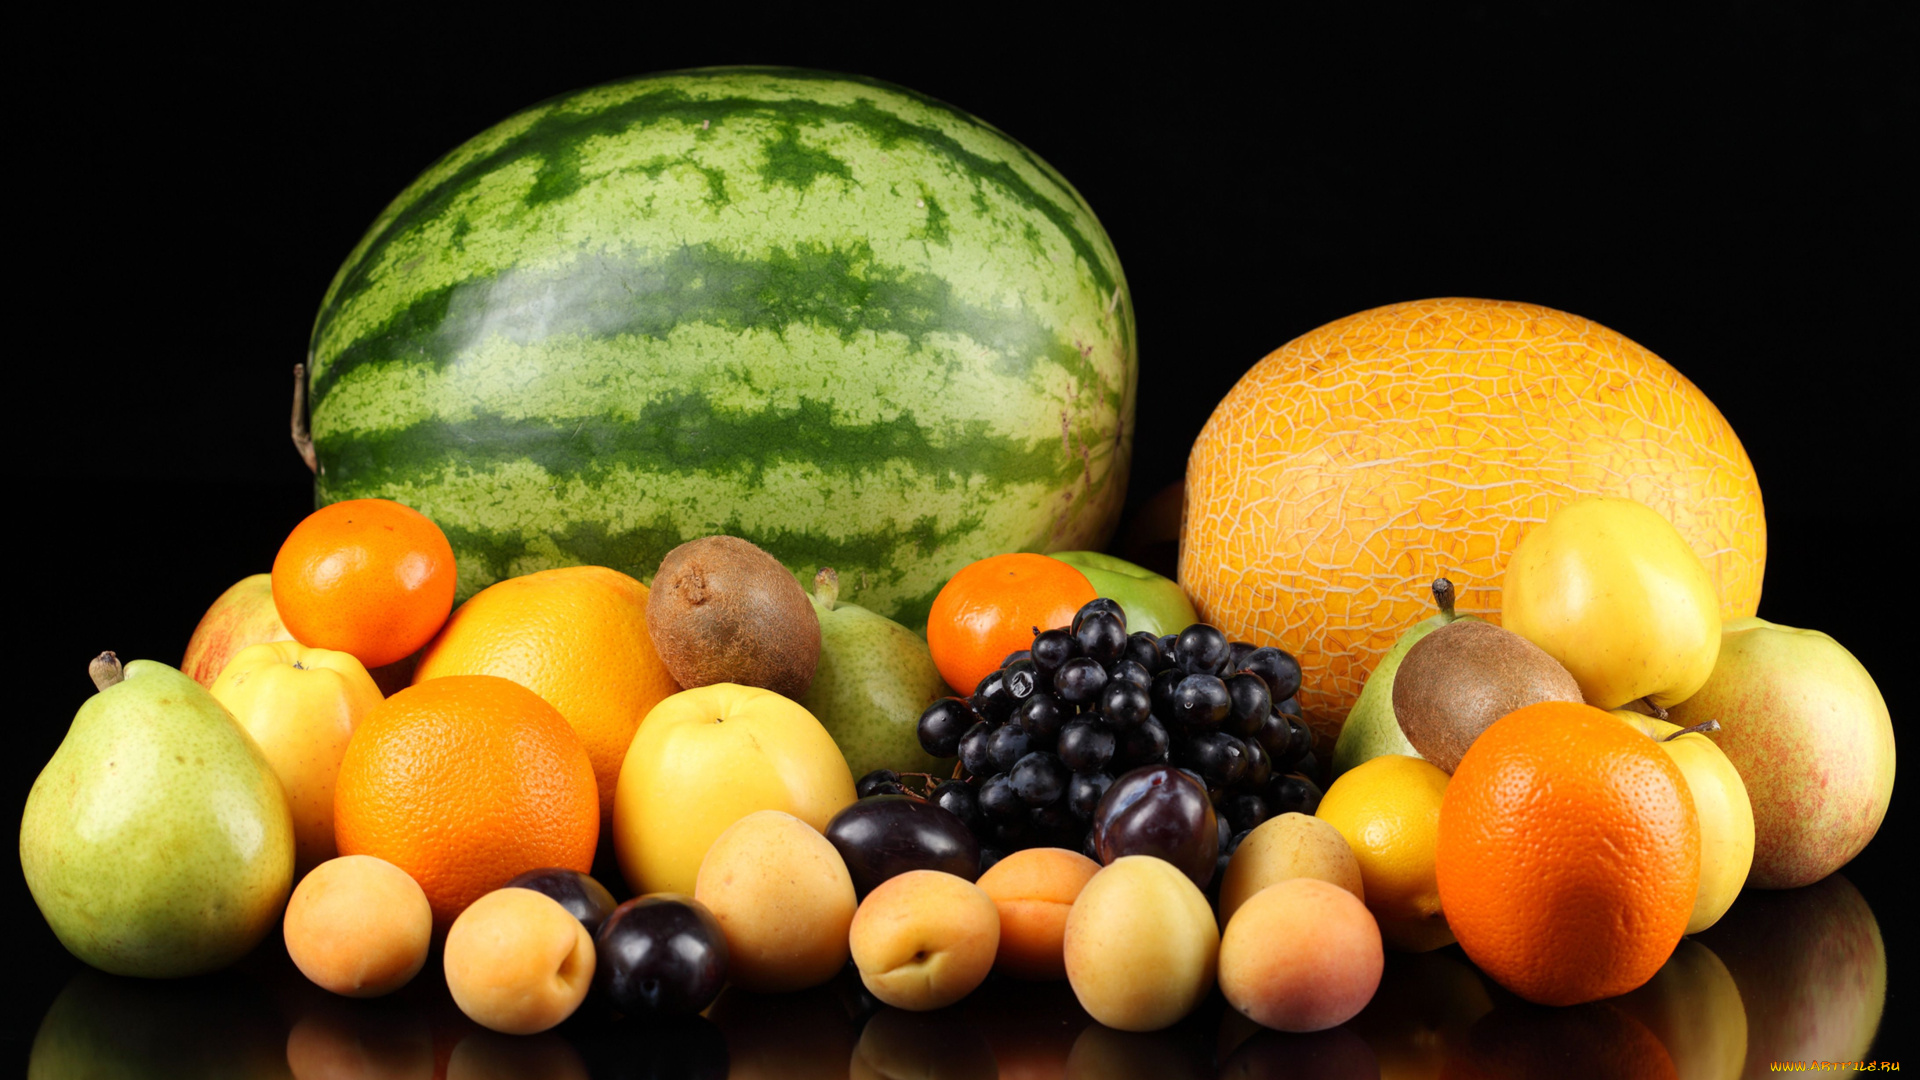 еда, фрукты, ягоды, арбуз, дыня, яблоки, груши, апельсины, виноград, абрикосы, киви, мандарины